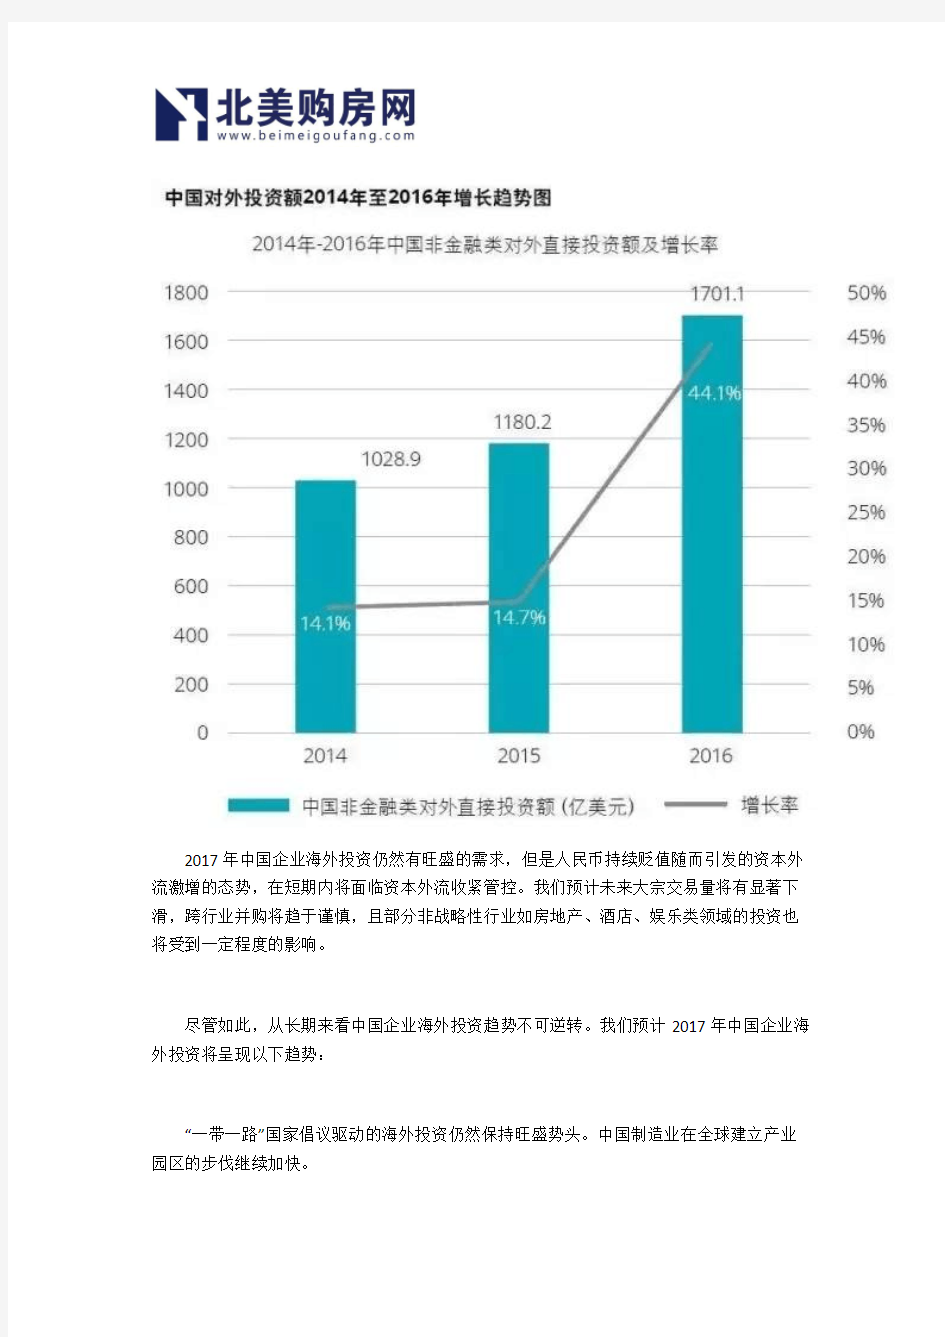 【北美购房网】干货德勤发布《2017中国企业海外投资指南》